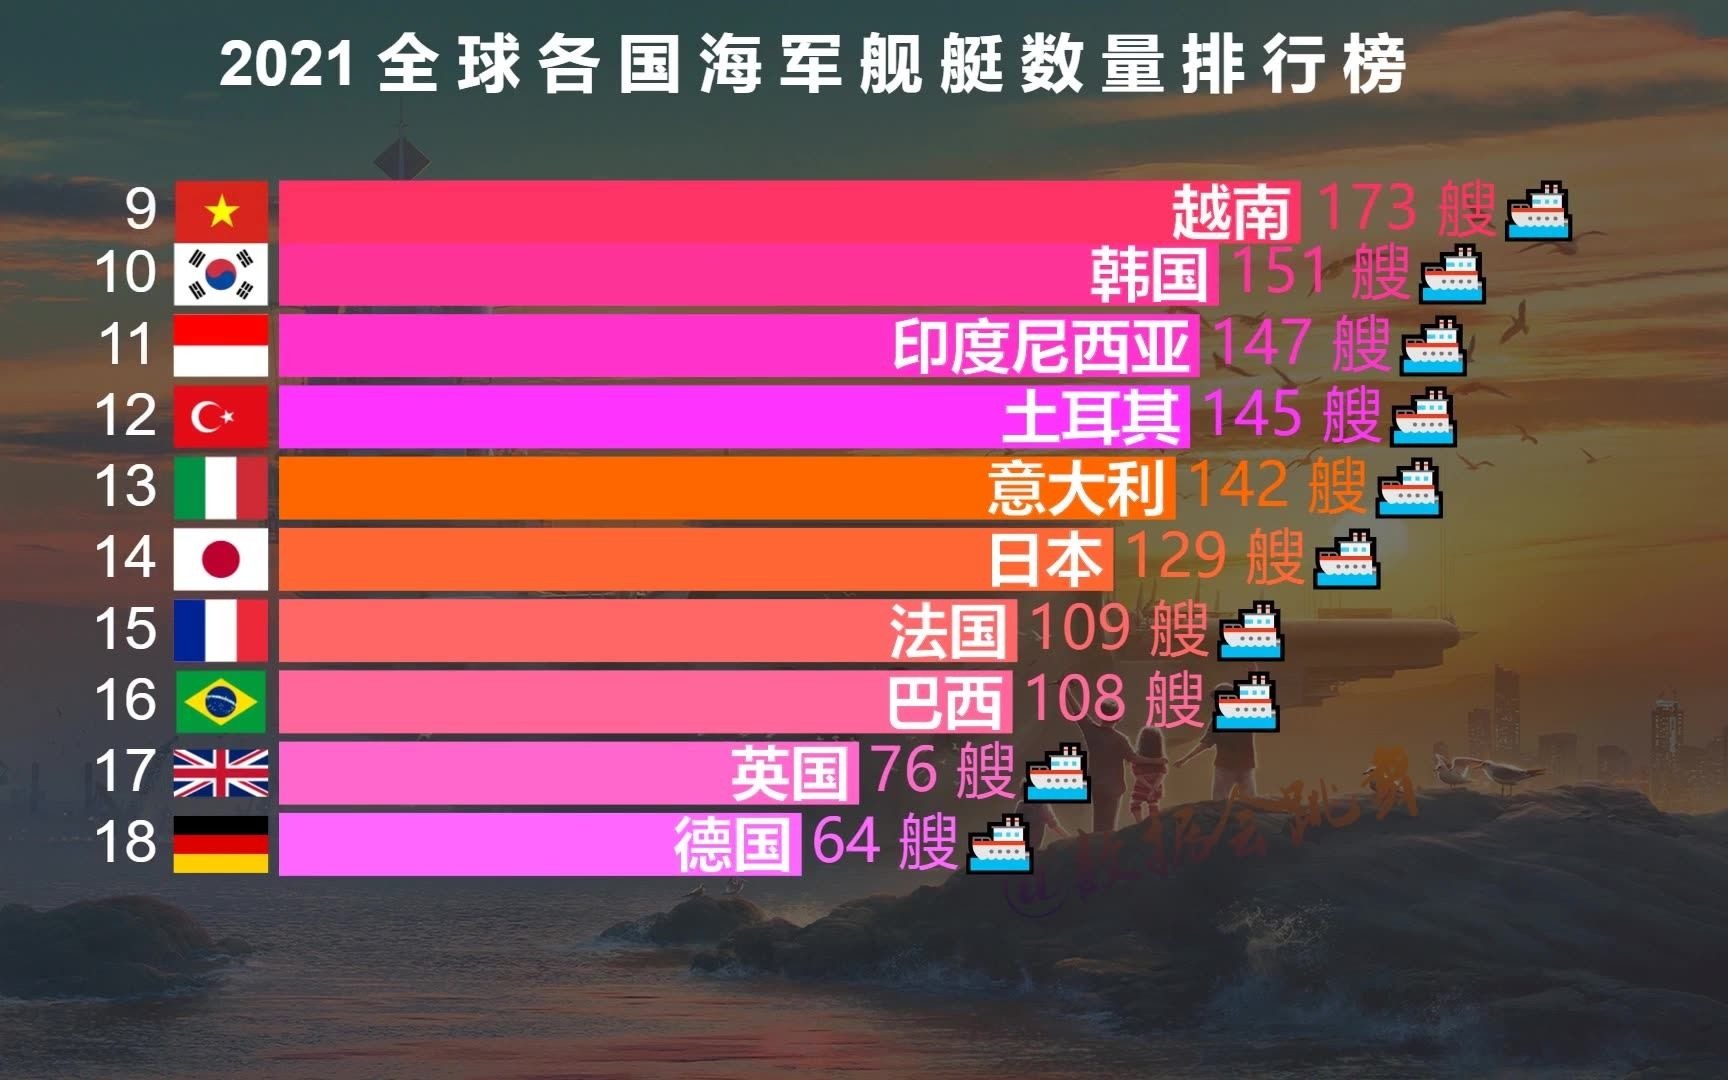 世界各国海军舰艇数量排行榜,中国能排多少名?看完真的很自豪